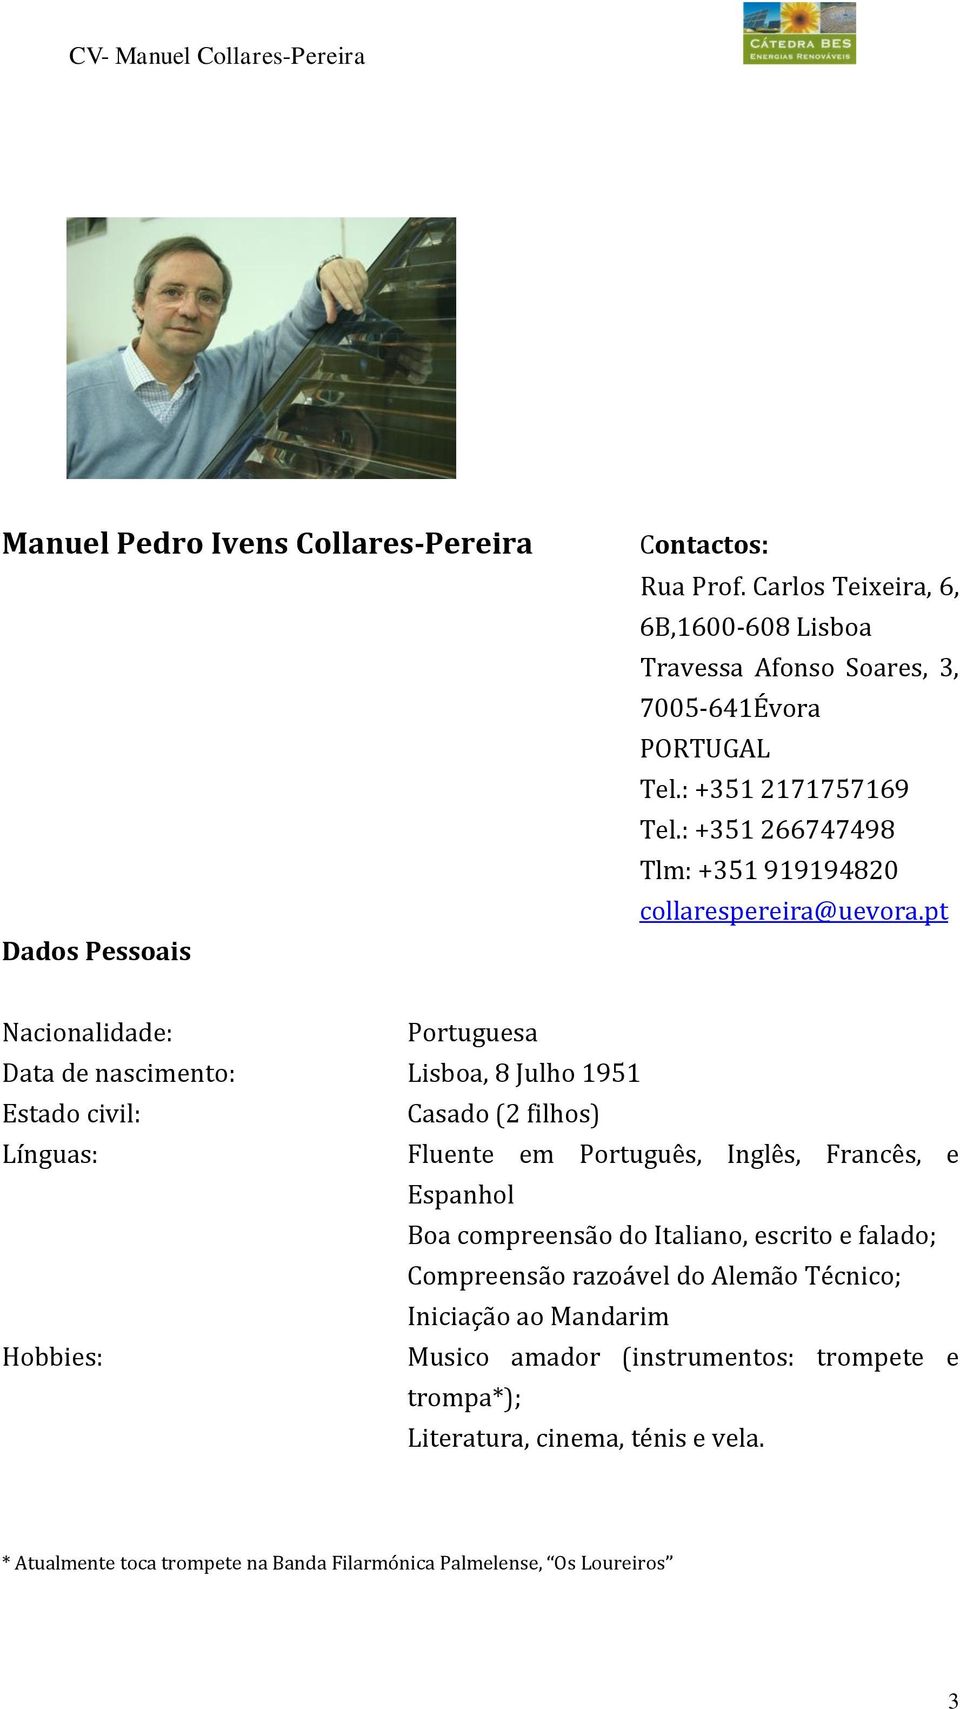 CURRICULUM VITAE MANUEL PEDRO IVENS COLLARES-PEREIRA. Dezembro PDF Free  Download